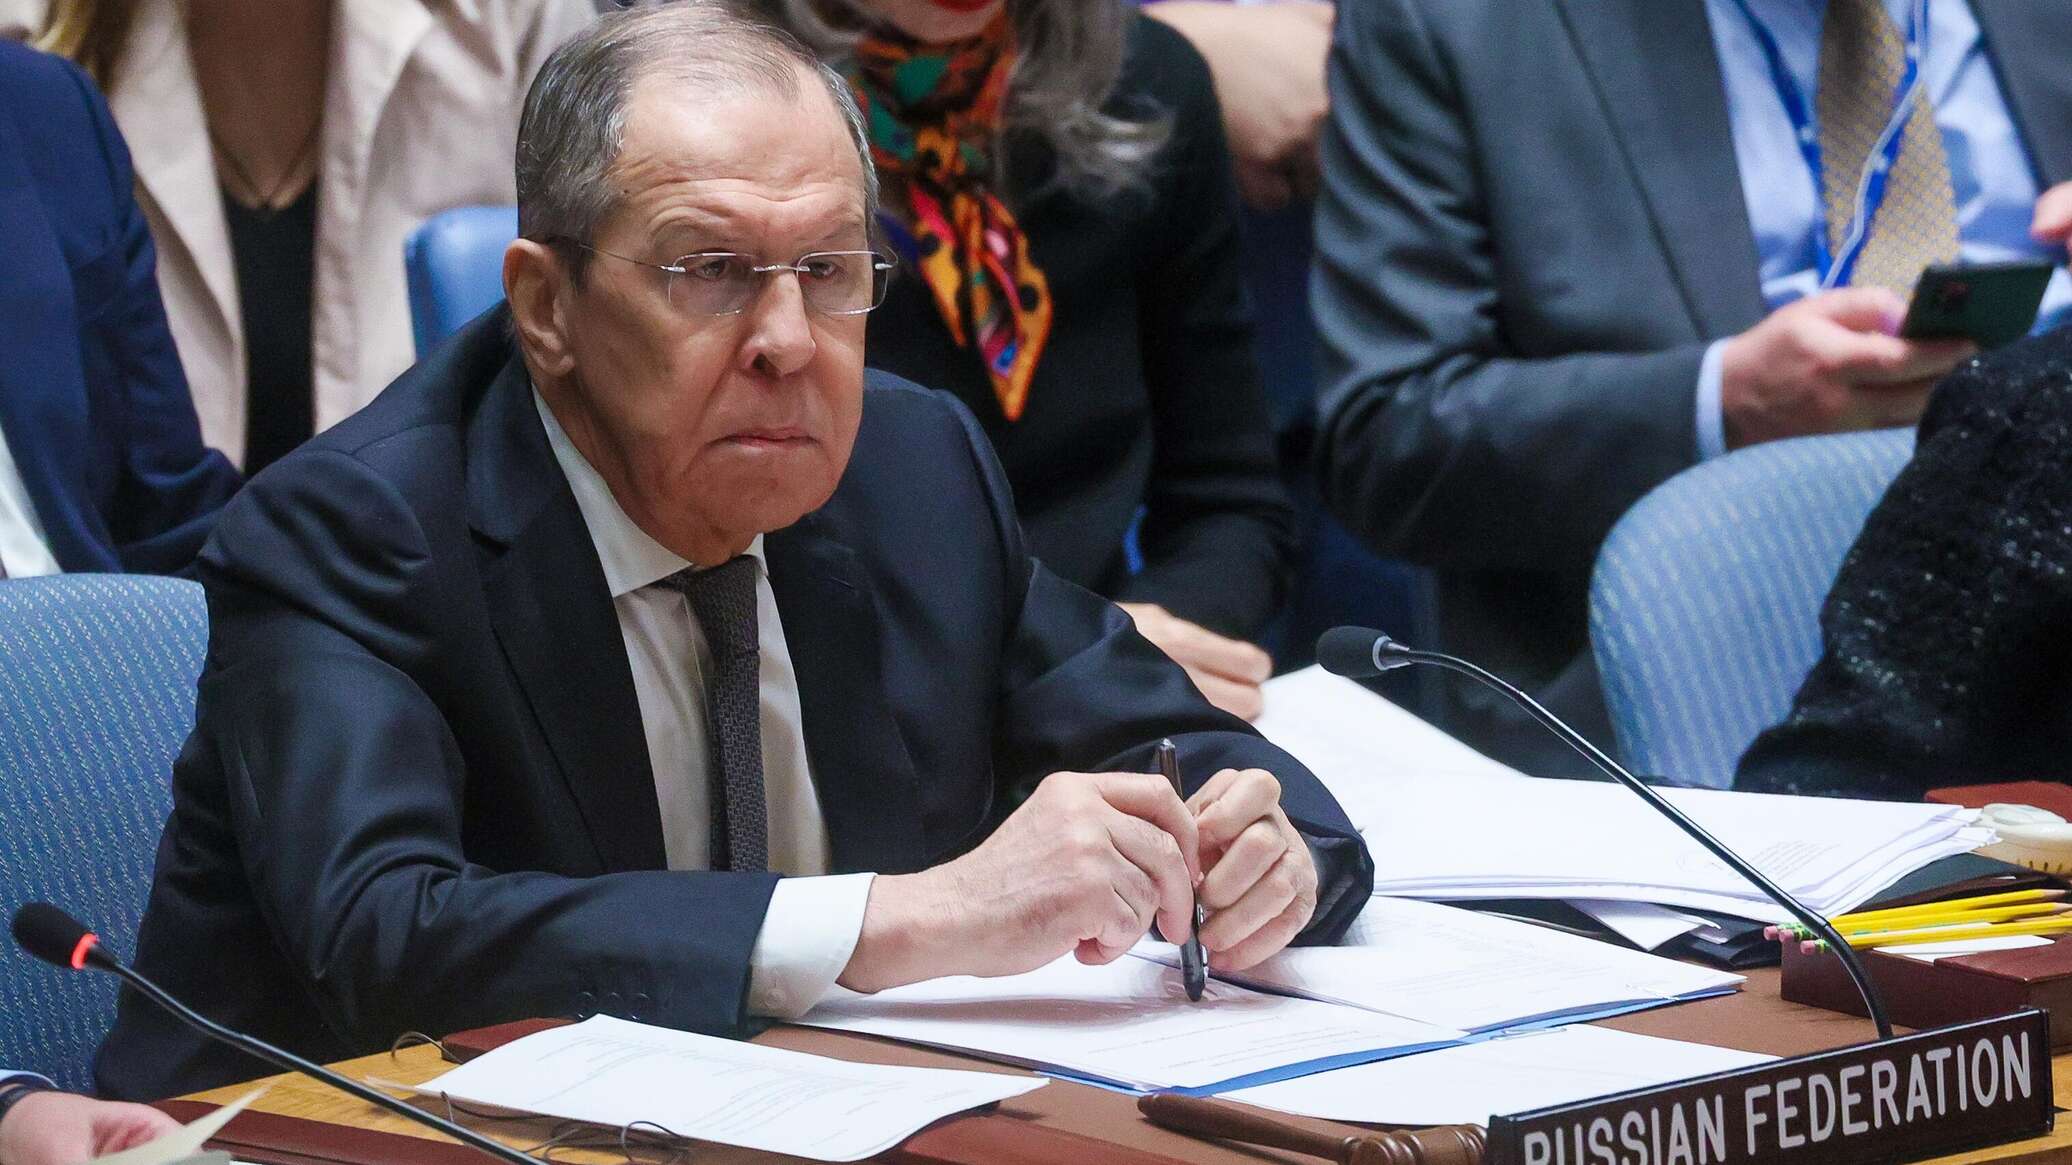 المندوب الروسي: موسكو لا يمكنها قبول تقاعس مجلس الأمن عن أداء مهامه إزاء الأزمة في الشرق الأوسط